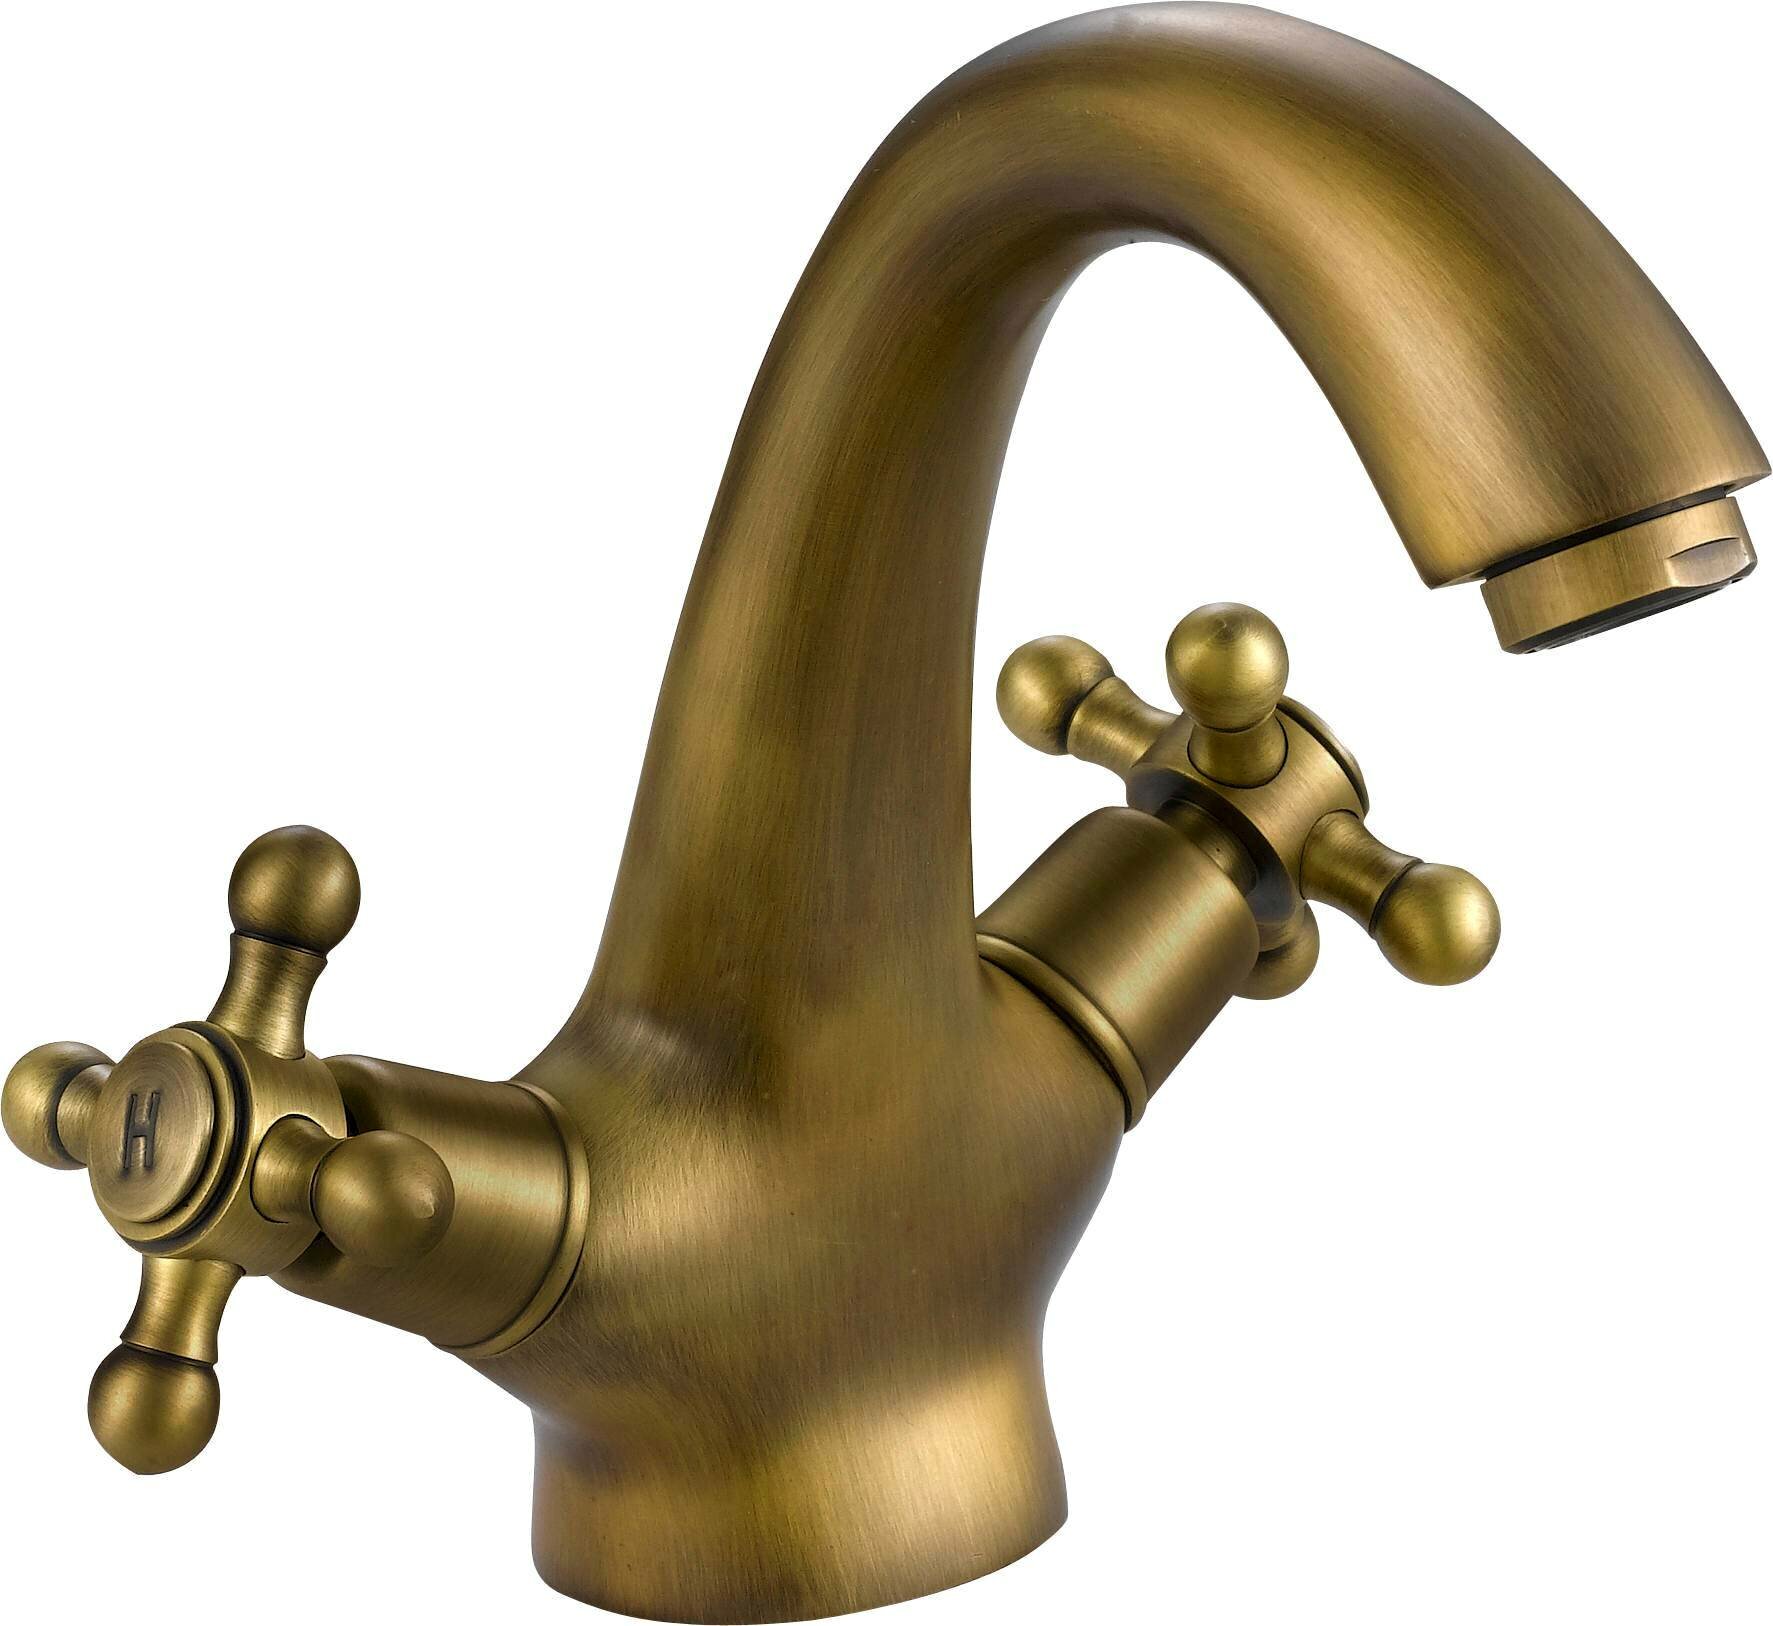 Brass kitchen faucet